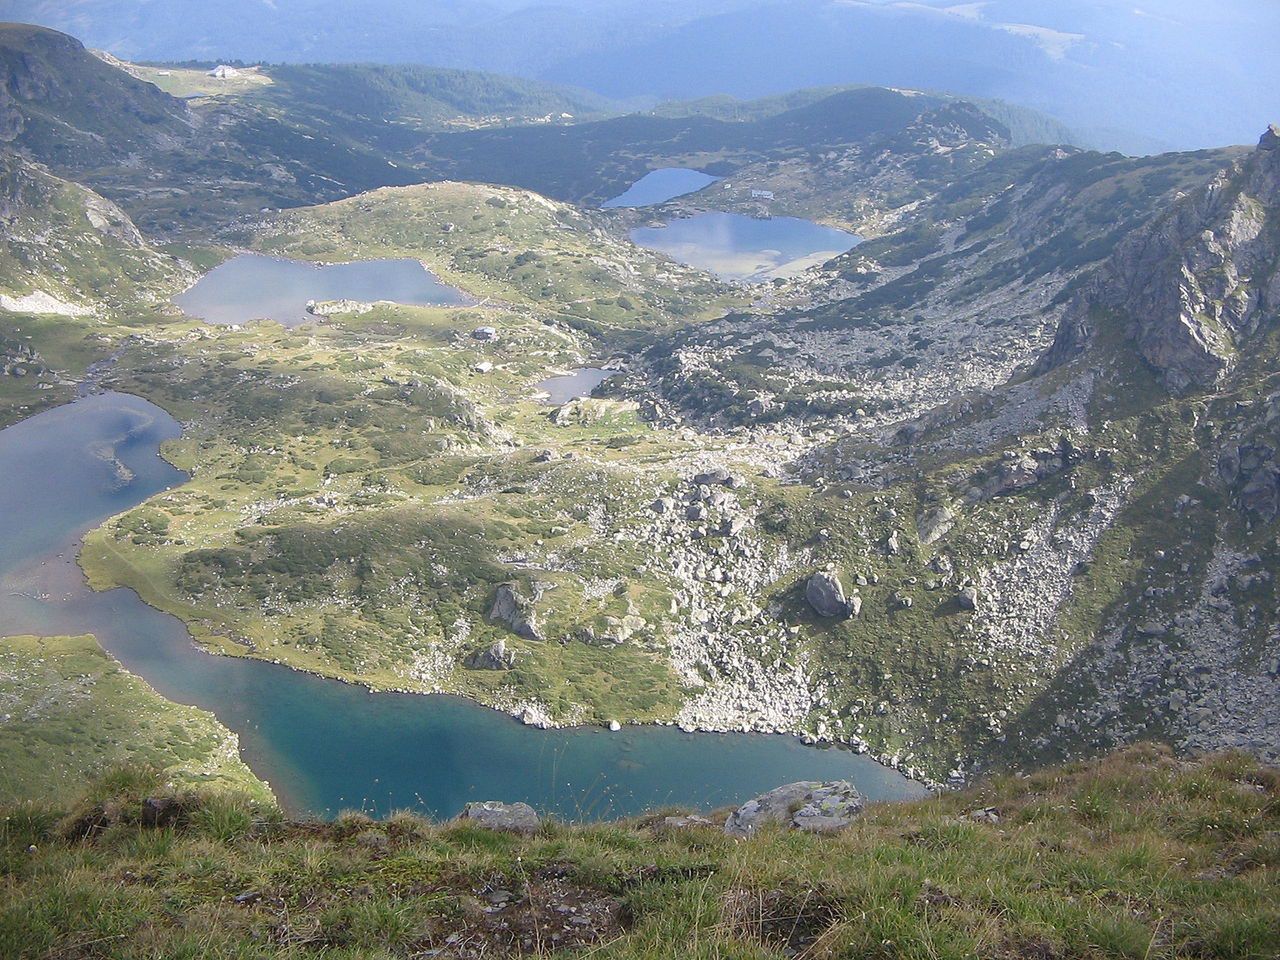 Siedem Rilskich Jezior w masywie Riła (Bułgaria) to typowy przykład jezior polodowcowych